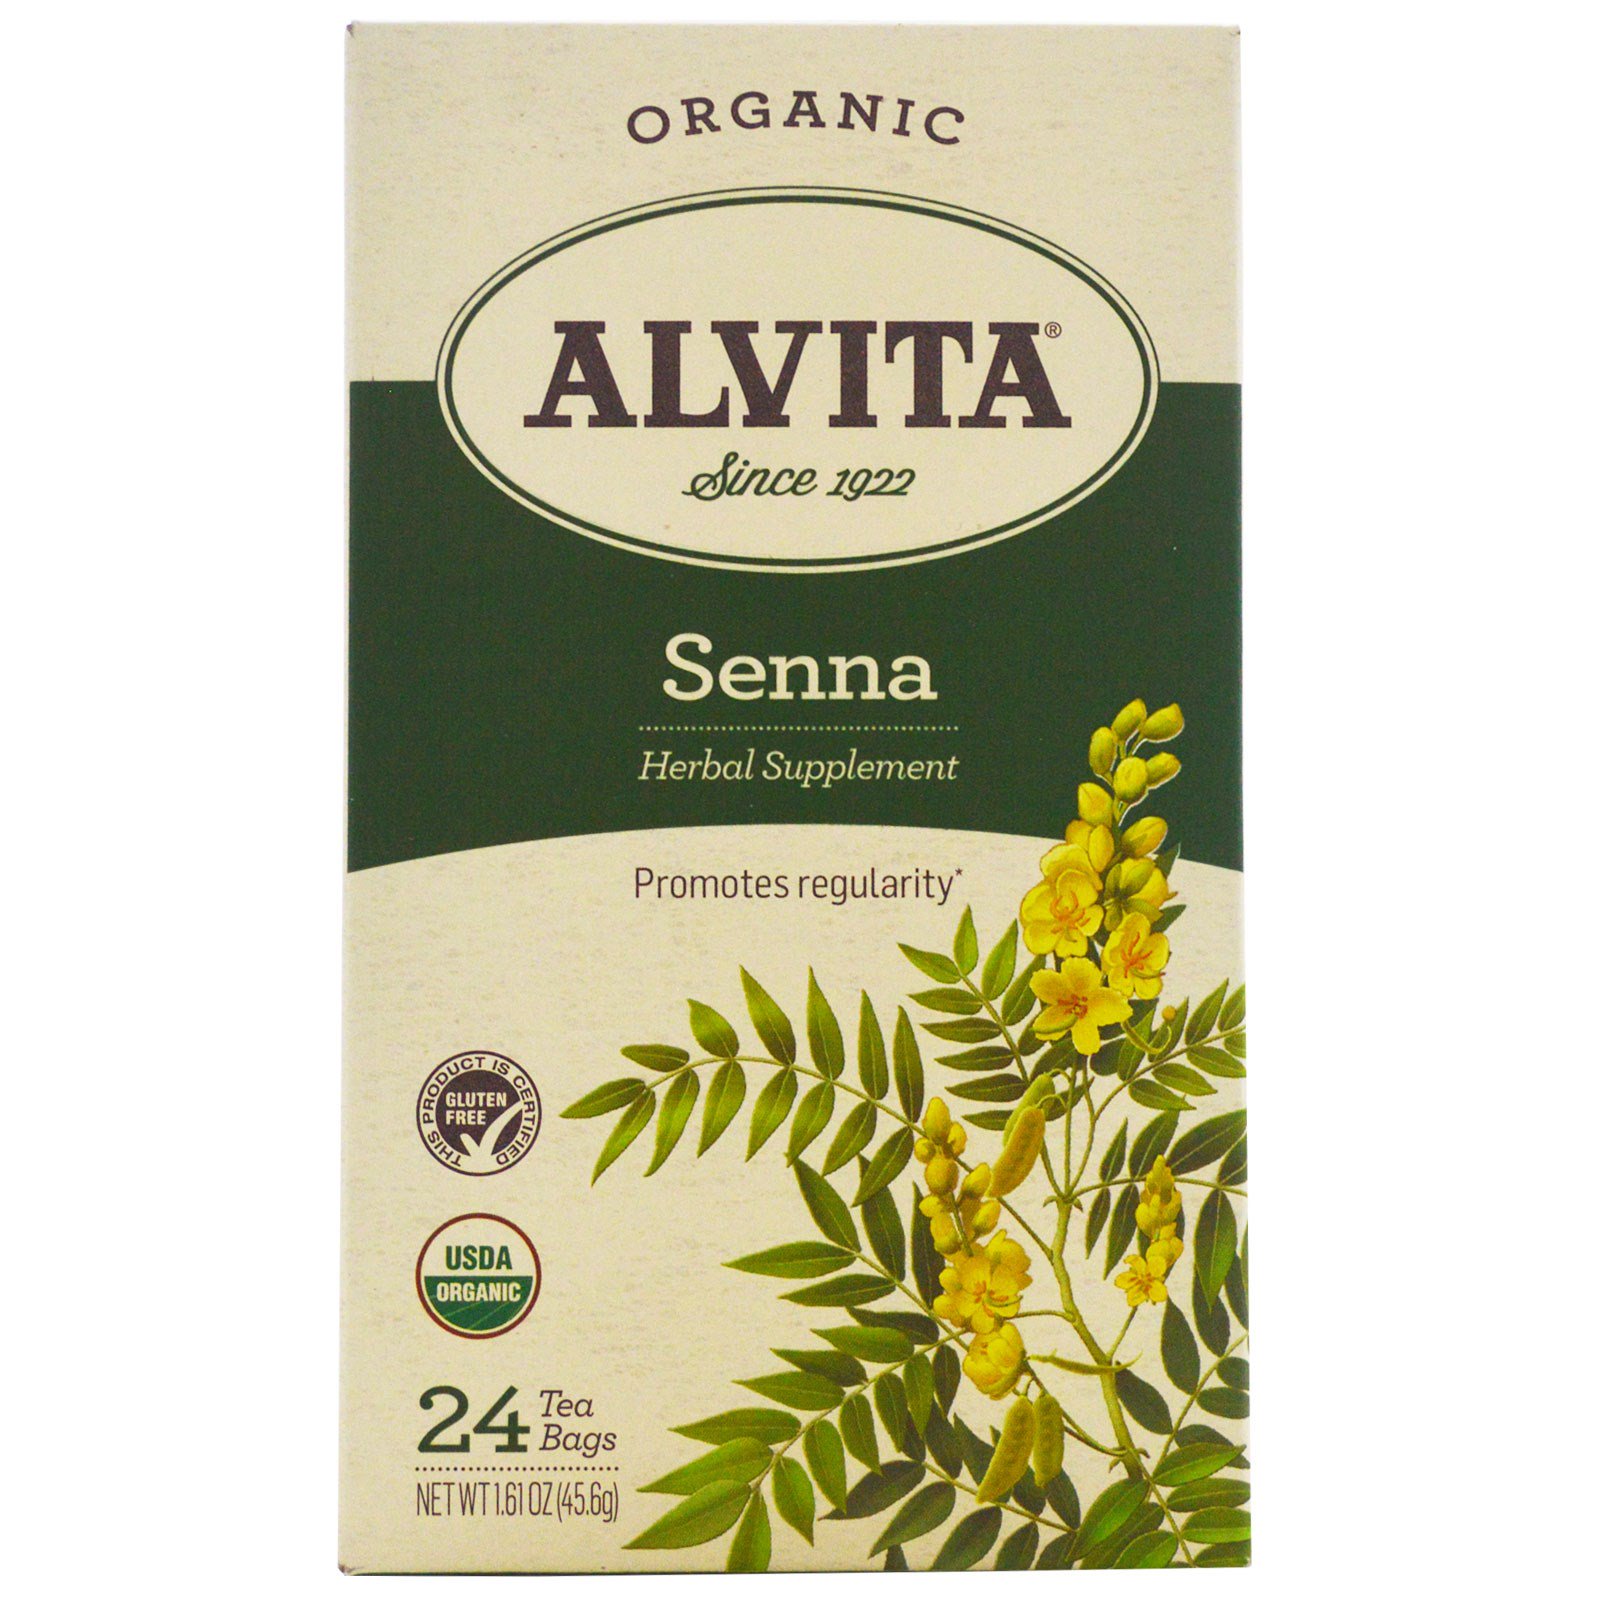 Alvita Teas, Organic, чай с сенной, без кофеина, 24 чайных пакетика по 1,61 унции (45,6 г) каждый